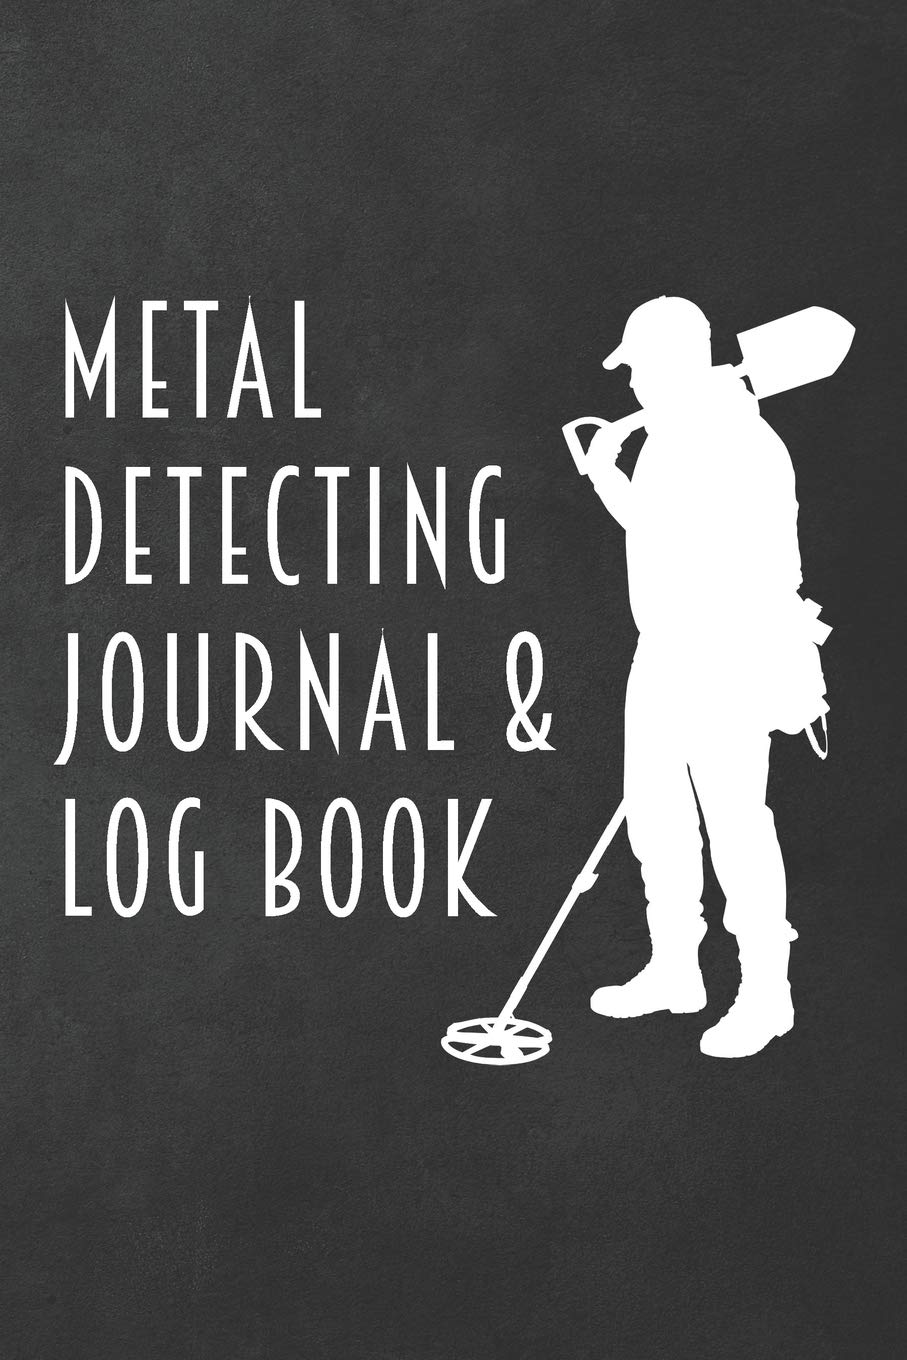 Handheld log metal detectors